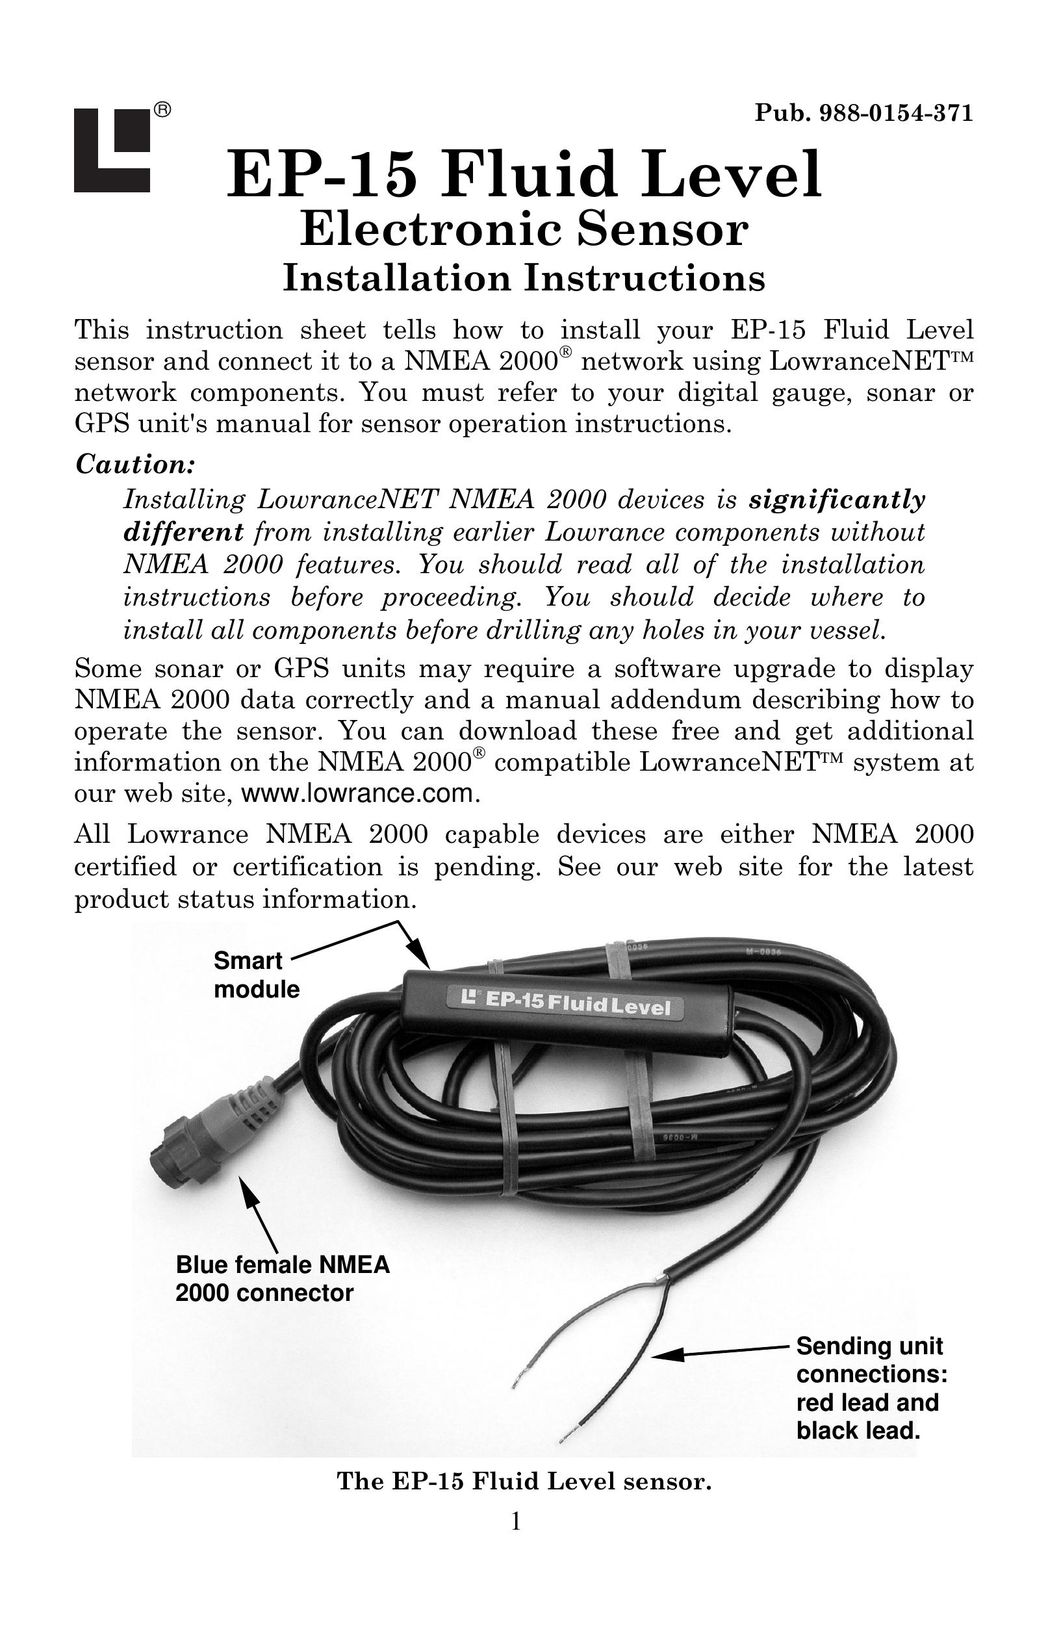 Lowrance electronic EP-15 Stud Sensor User Manual